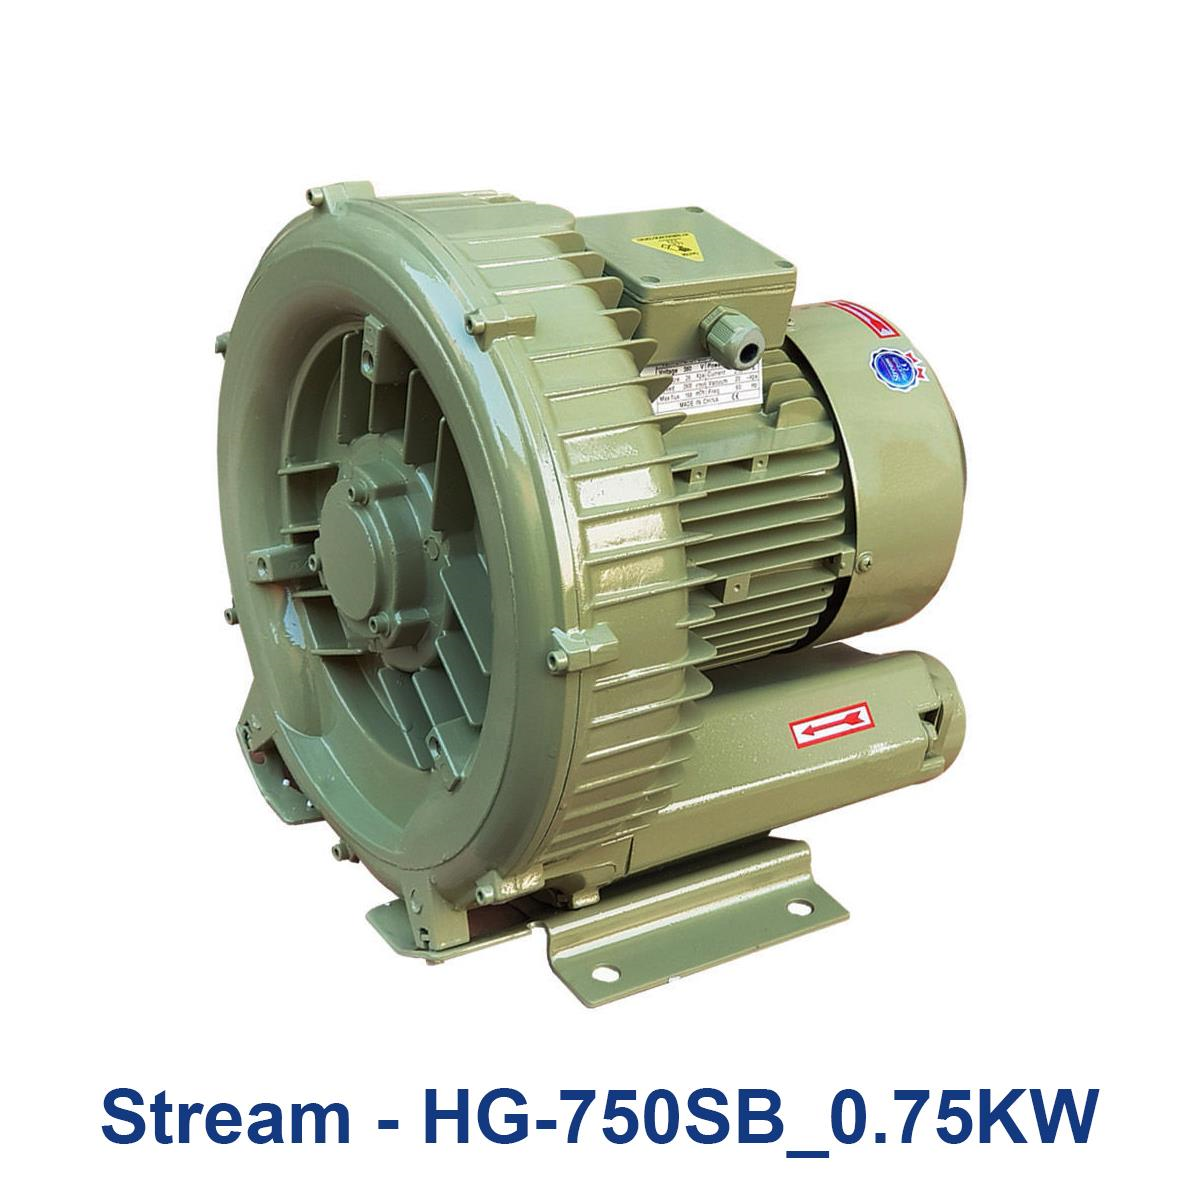 Stream---HG-750SB_0.75KW